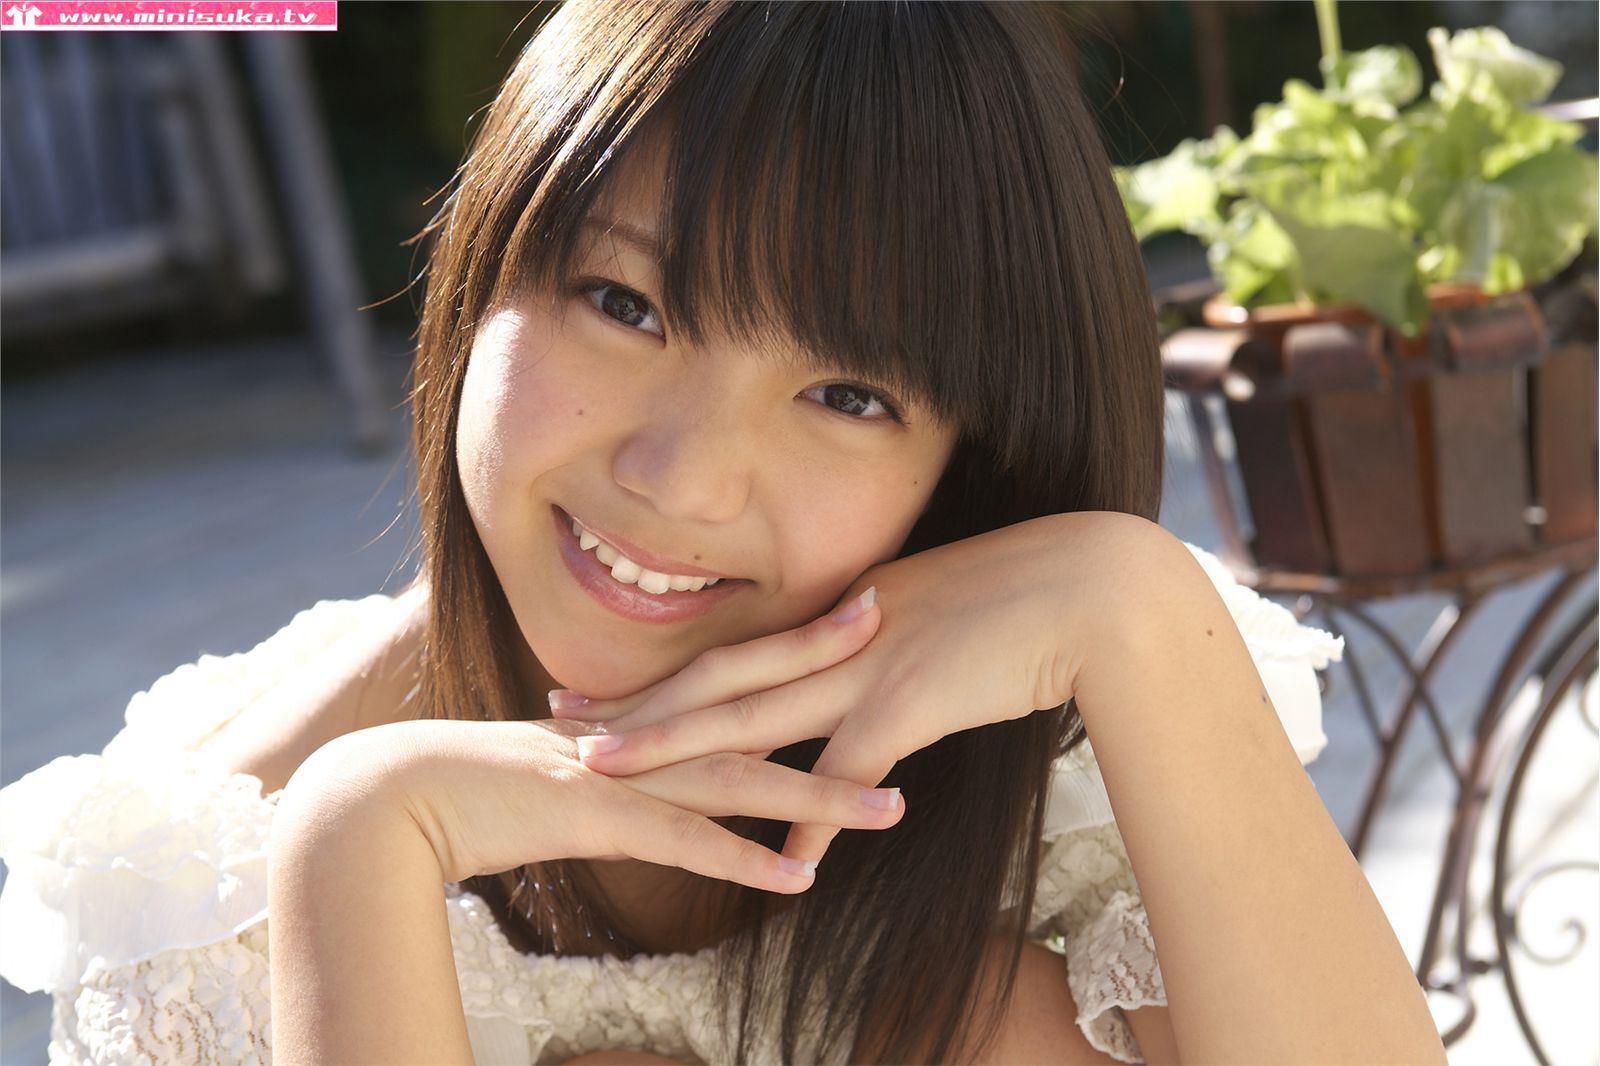 Nishioka Fuwa fuuka nishihama Minisuka. TV Junior high school girl photo